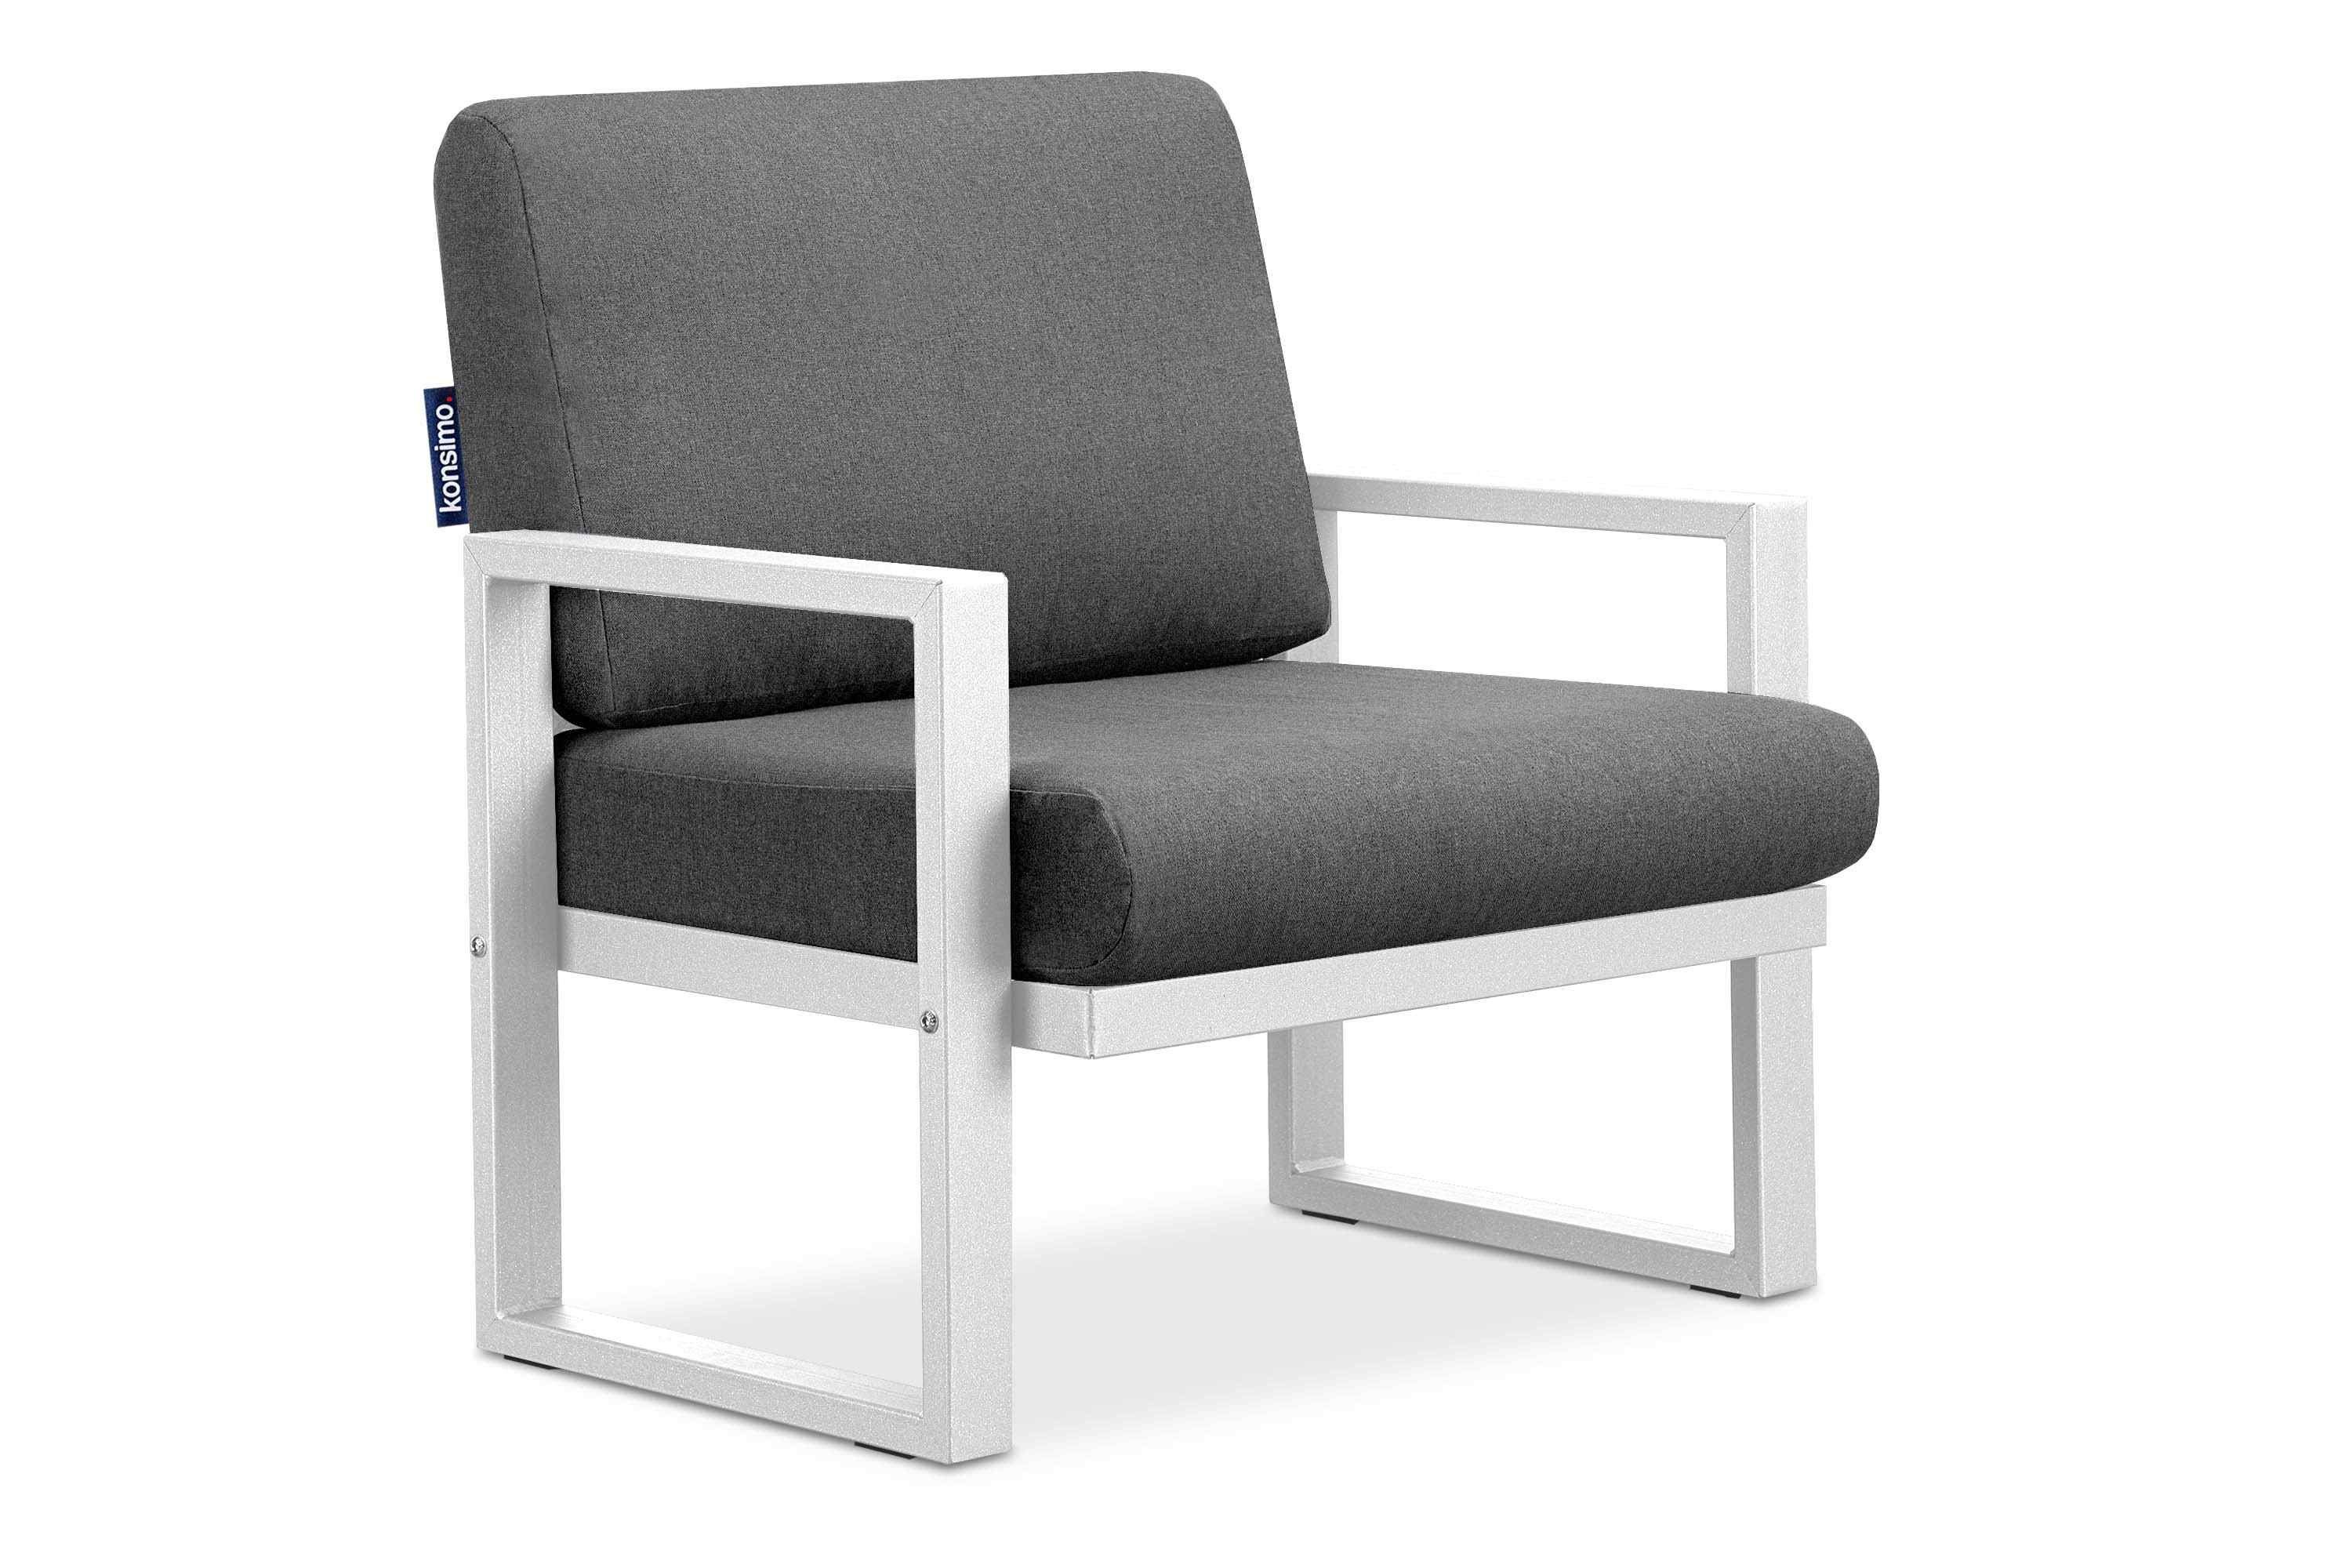 Konsimo Gartensessel FRENA Garten-Sessel (1x Sessel), pflegeleicht, bequeme Sitz- und Rückenkissen, schmutz- und wasserabweisend, UV-Beständigkeit weiß / grau